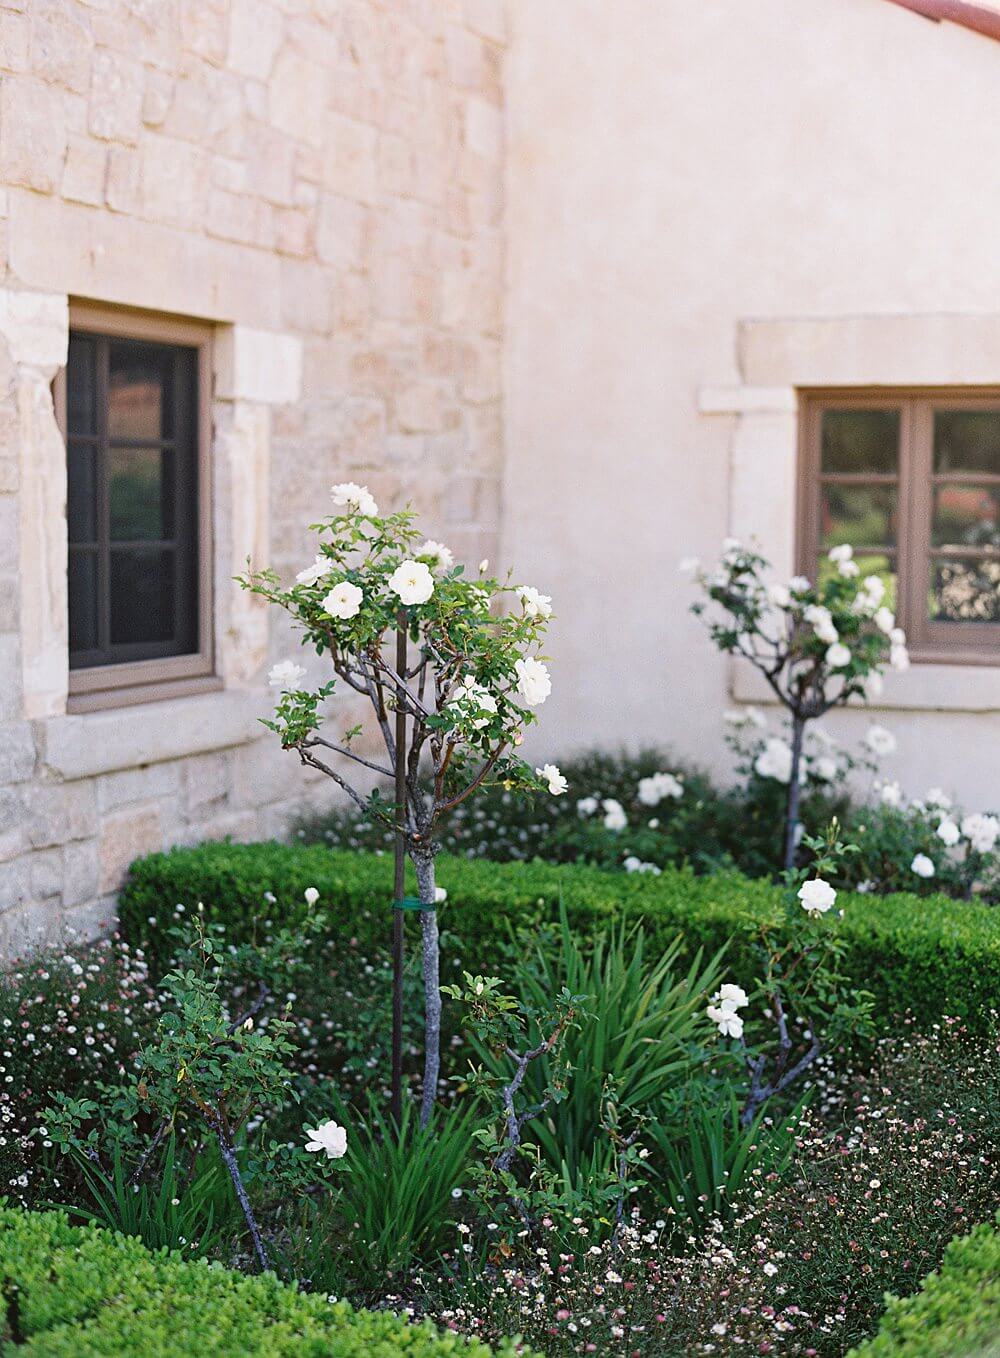 Rose garden at Cal-a-vie spa - Jacqueline Benét Photography